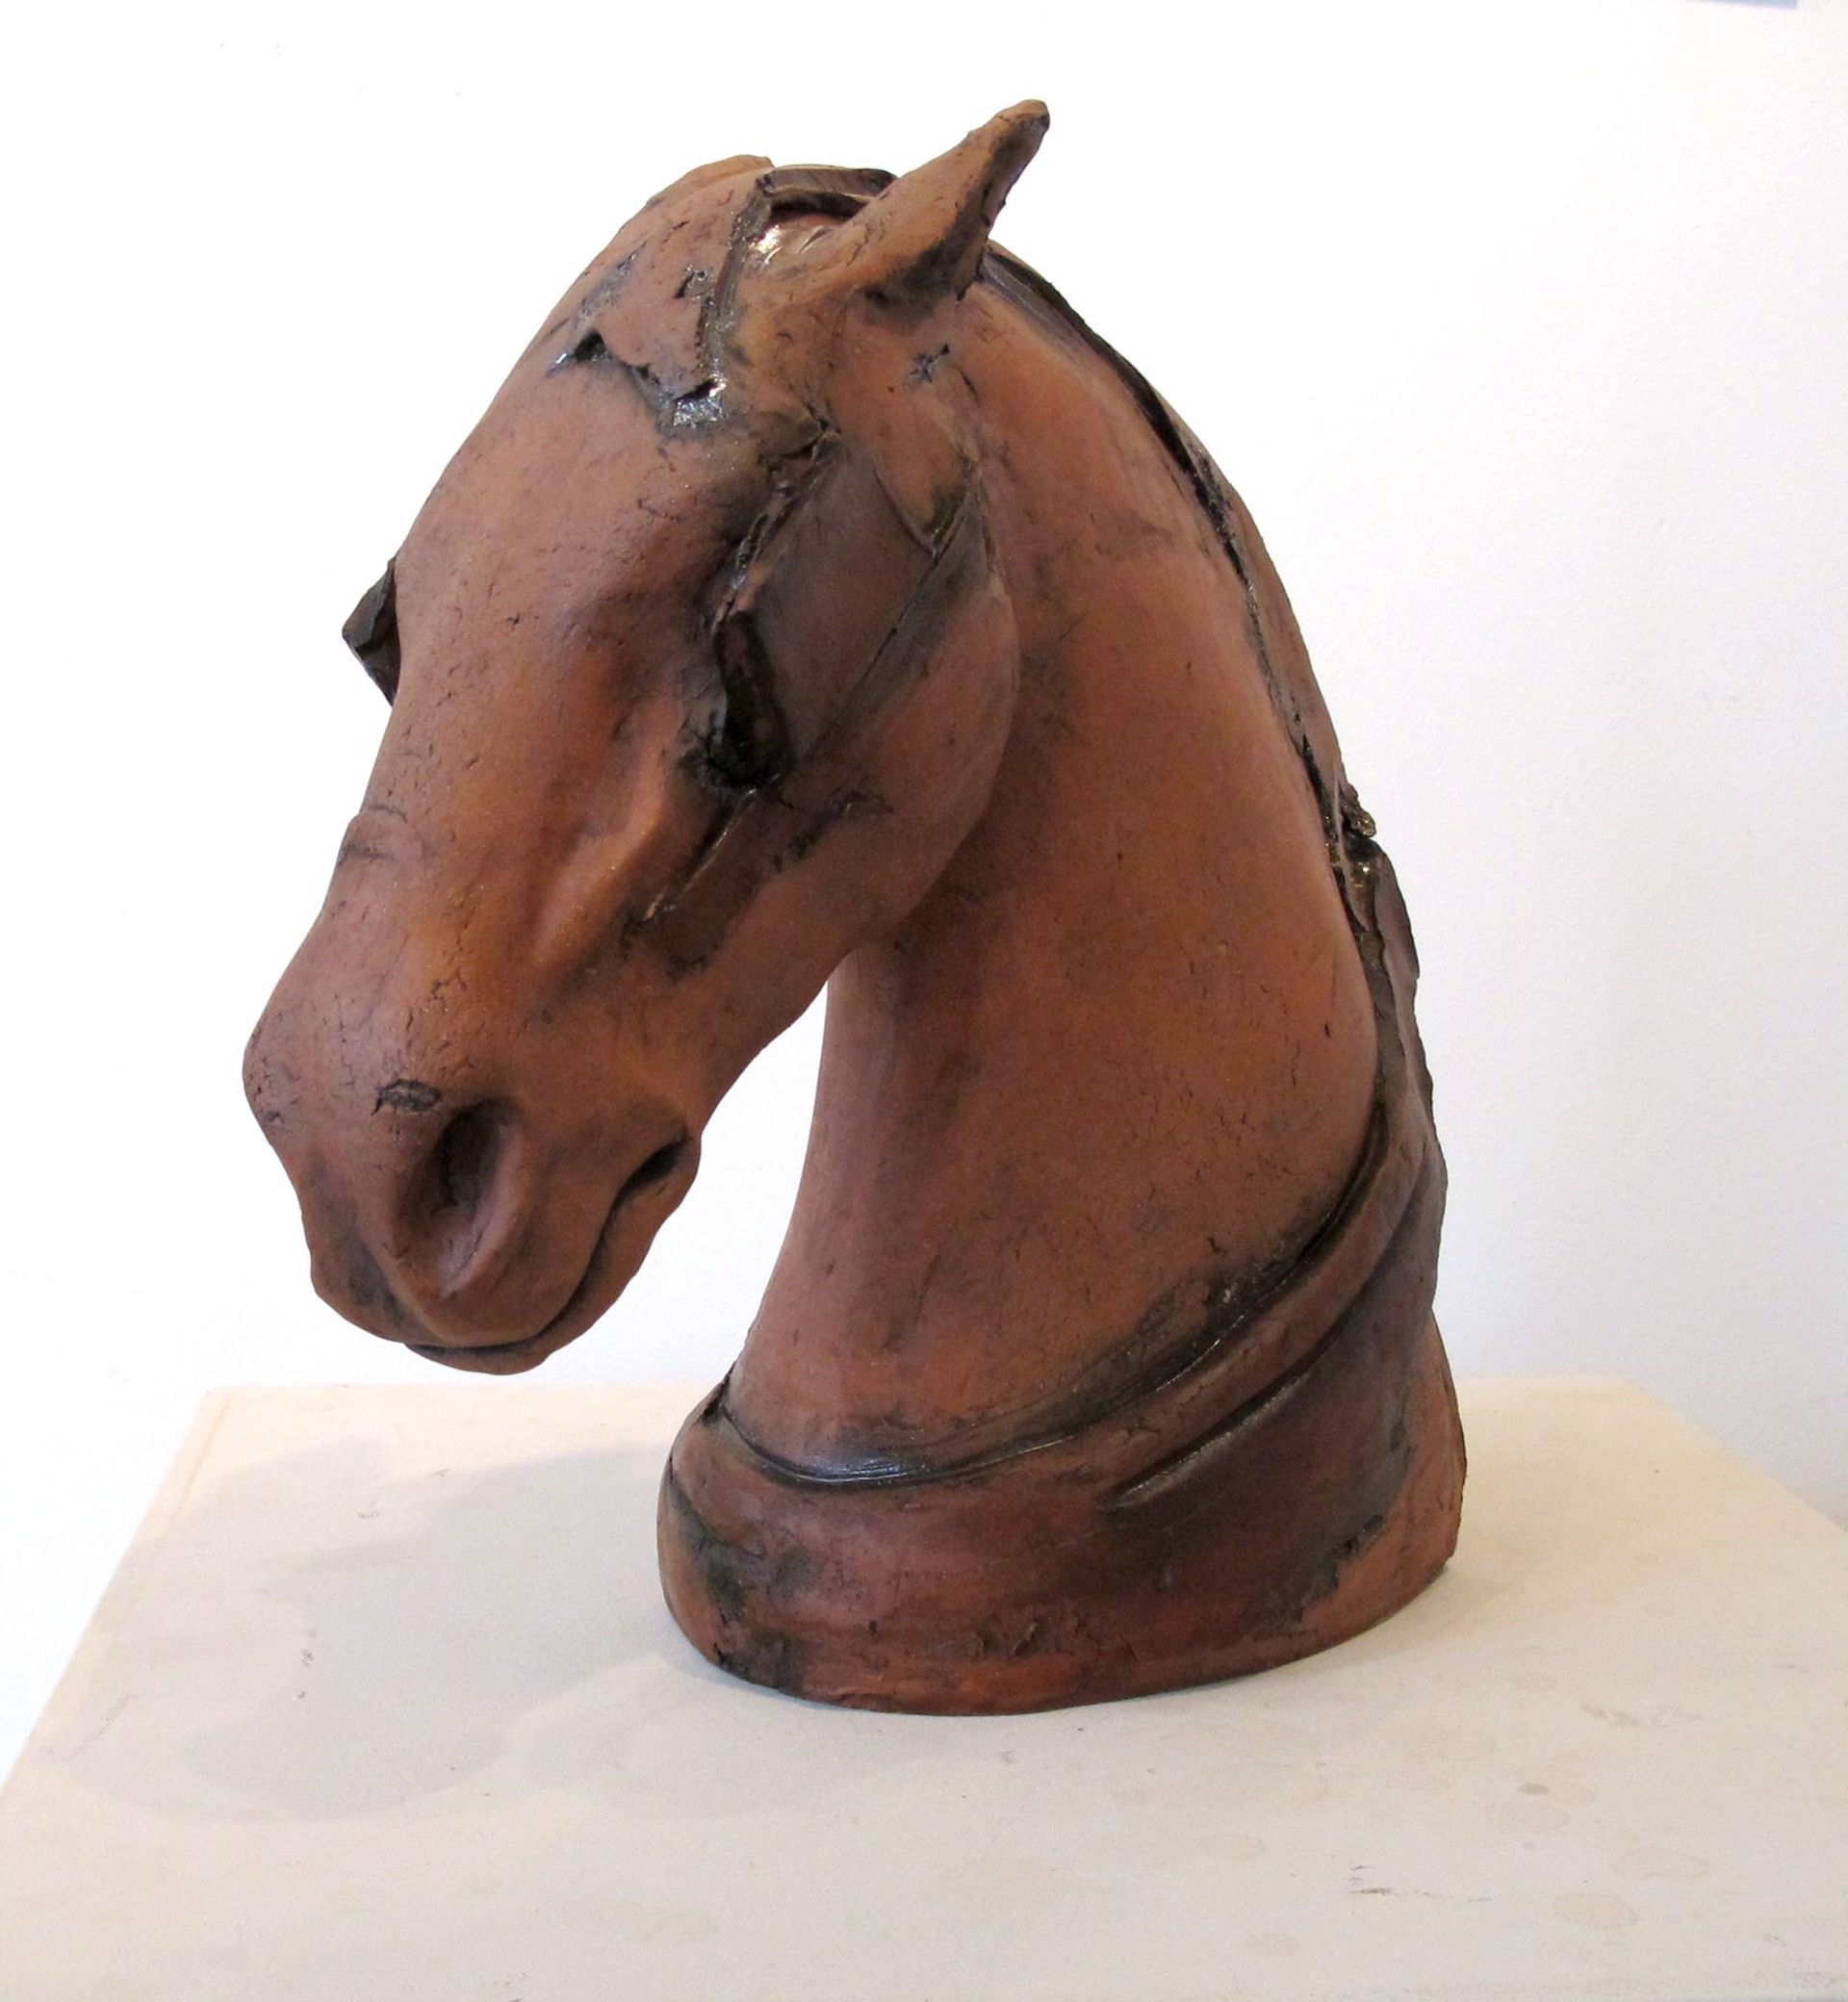 Red Horse Head by Meagan Kieffer